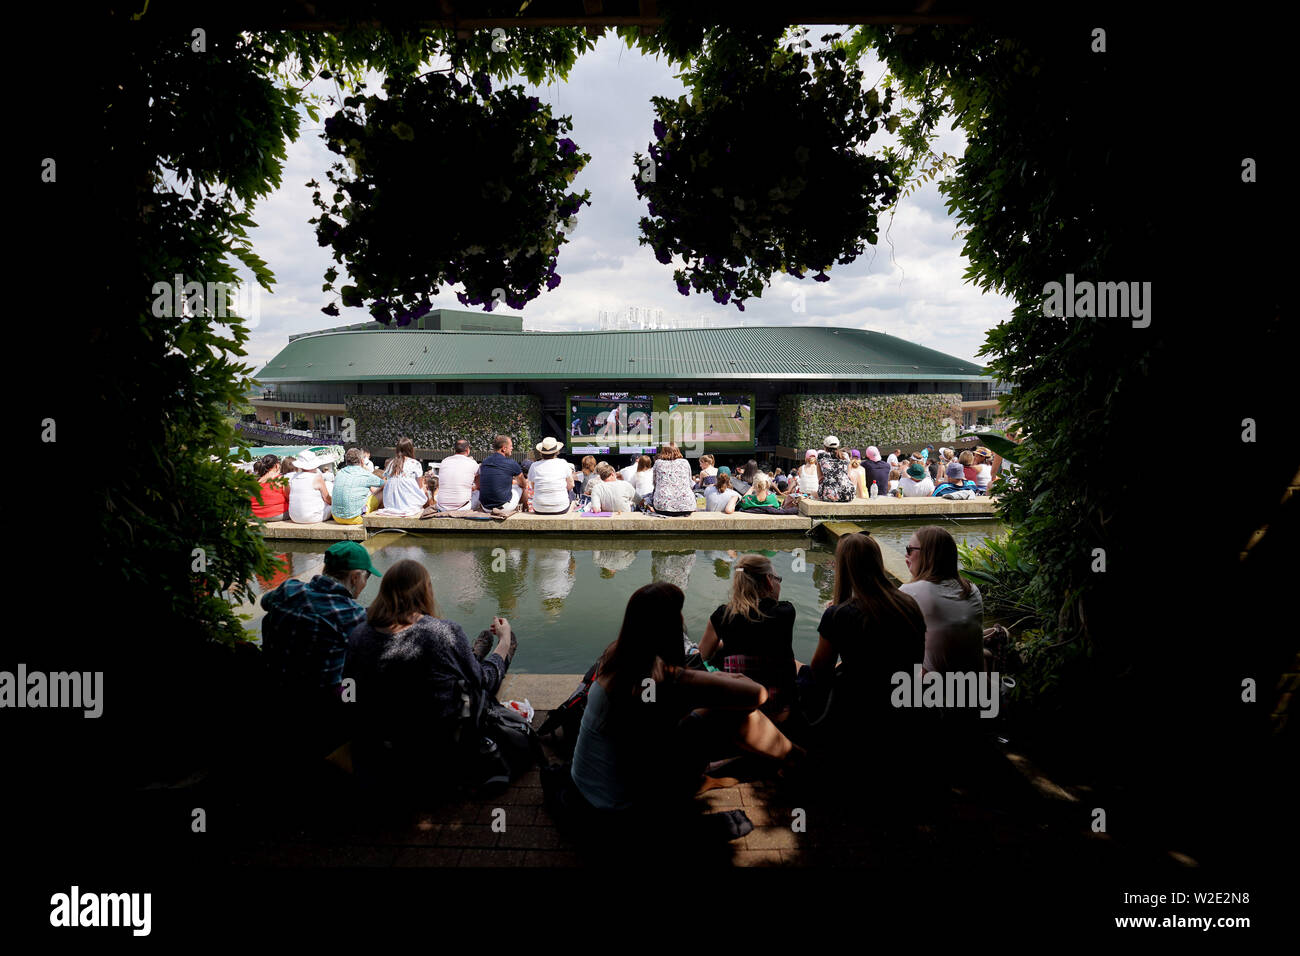 Am siebten Tag der Wimbledon Championships im All England Lawn Tennis and Croquet Club, London, sehen die Zuschauer die Großleinwand vom Murray Mound aus. Stockfoto